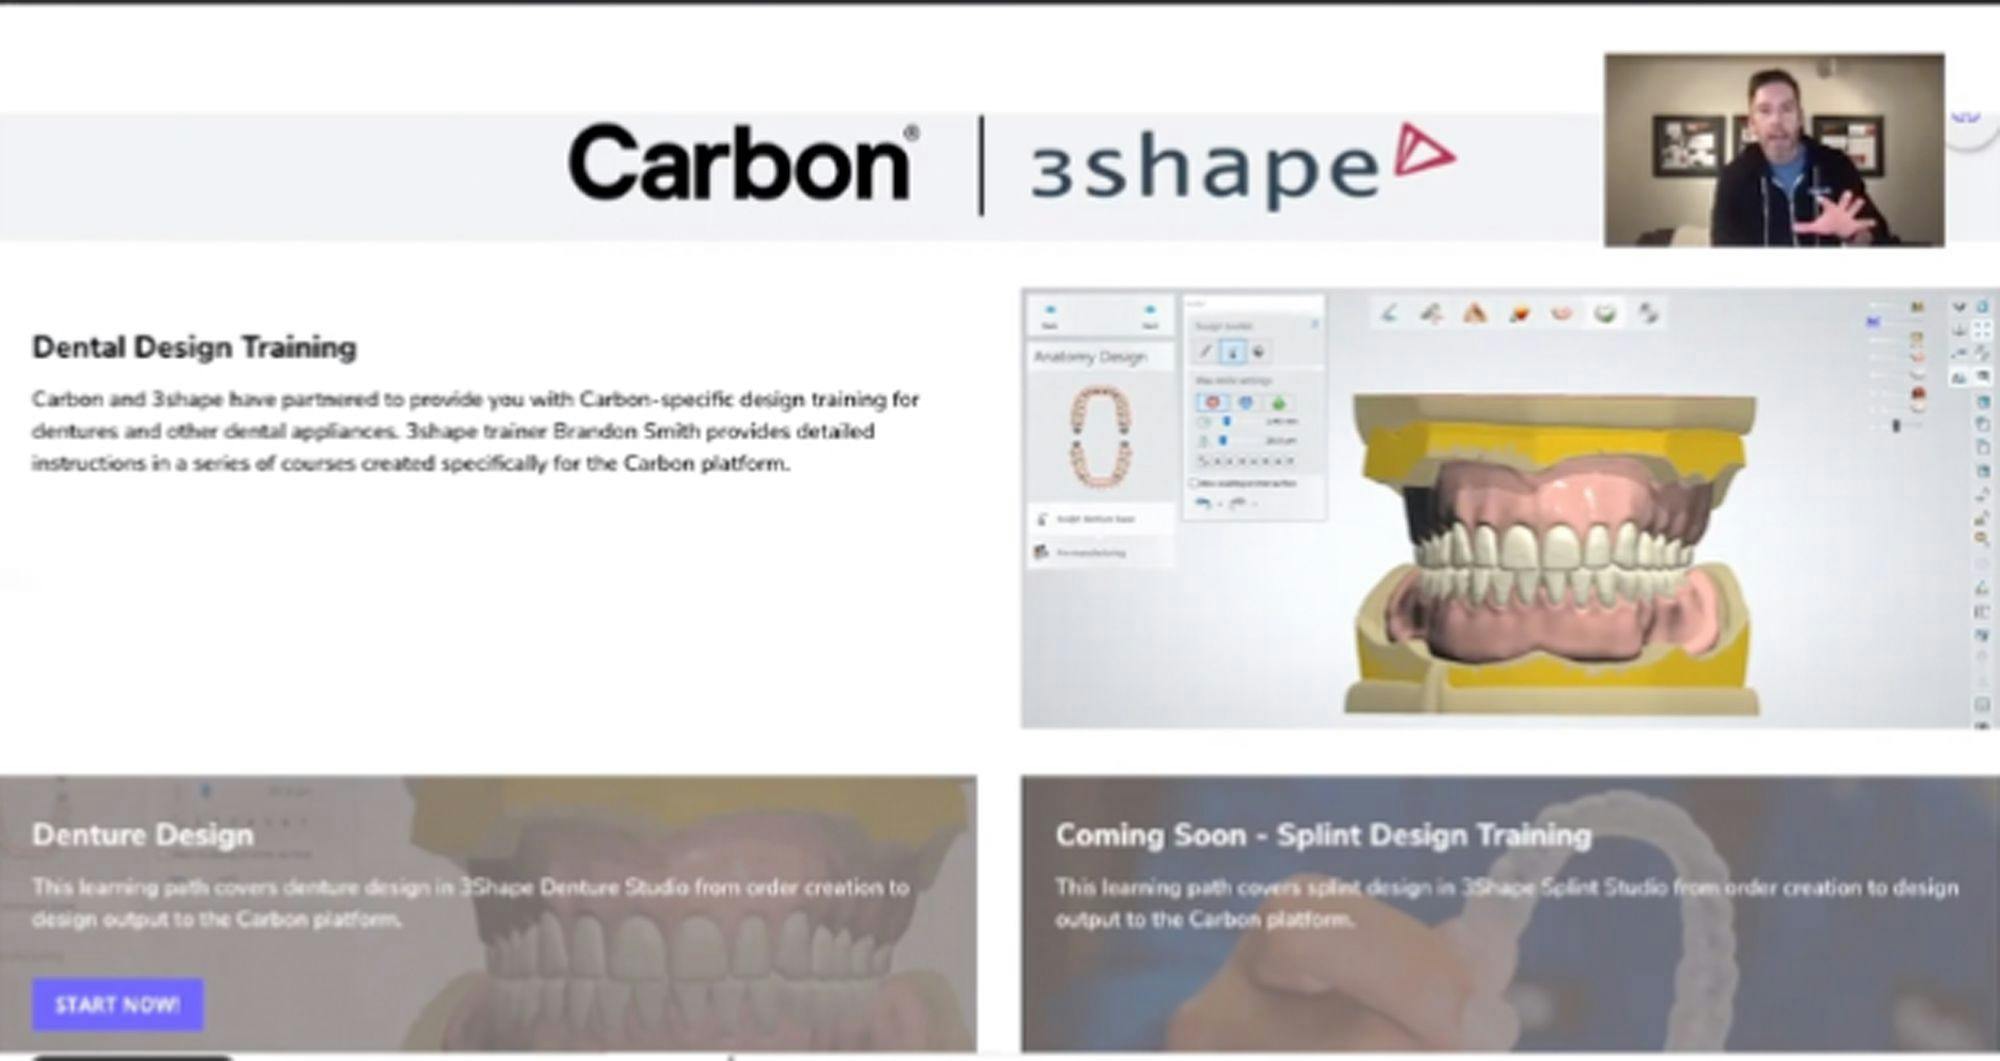 Carbon and 3Shape Partner for Digital Denture Design Training